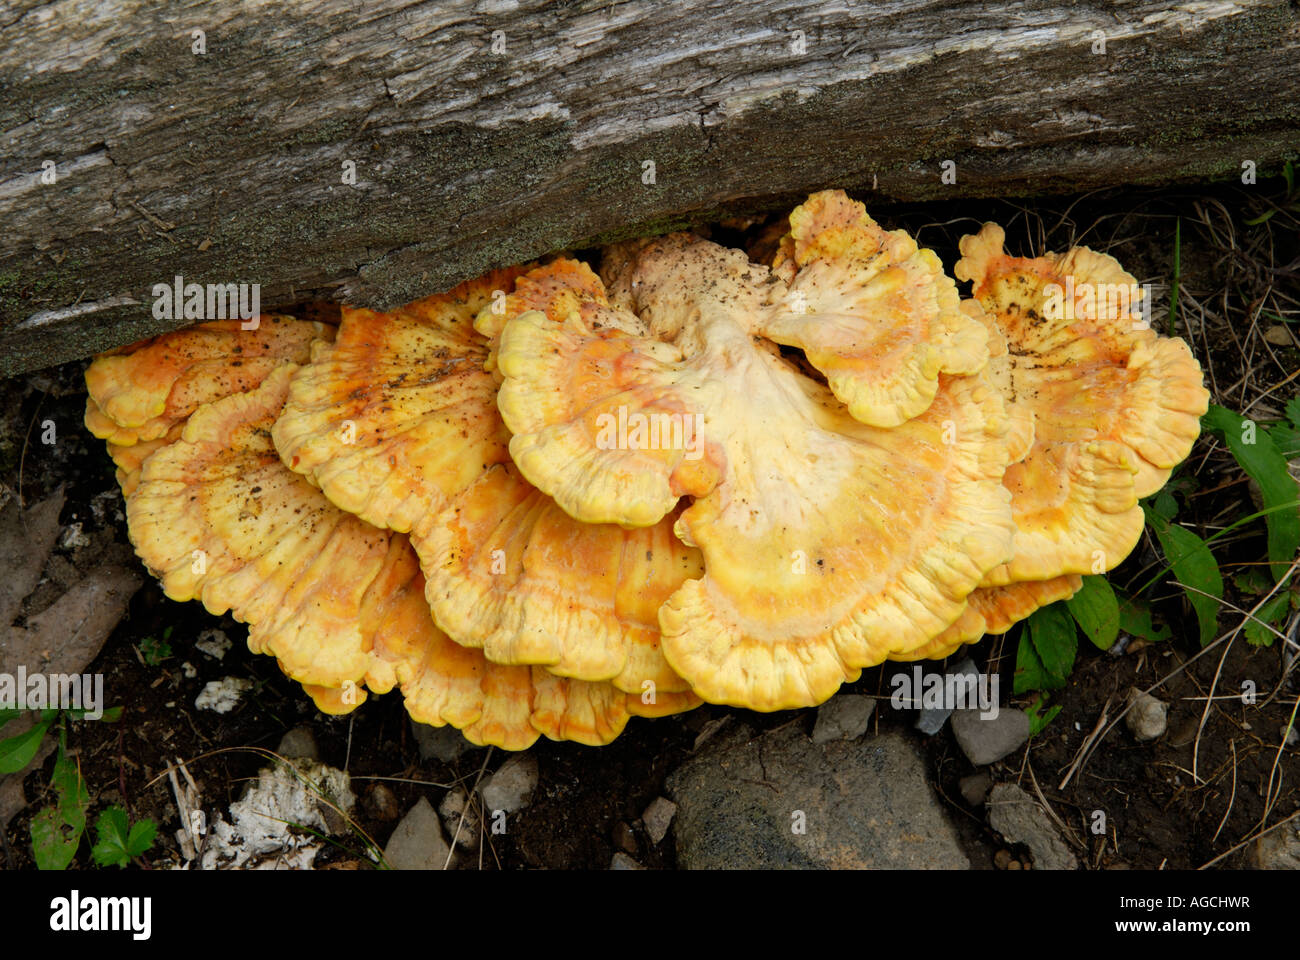 Sulphureus : est un champignon comestible populaire connue communément comme le poulet des bois Banque D'Images